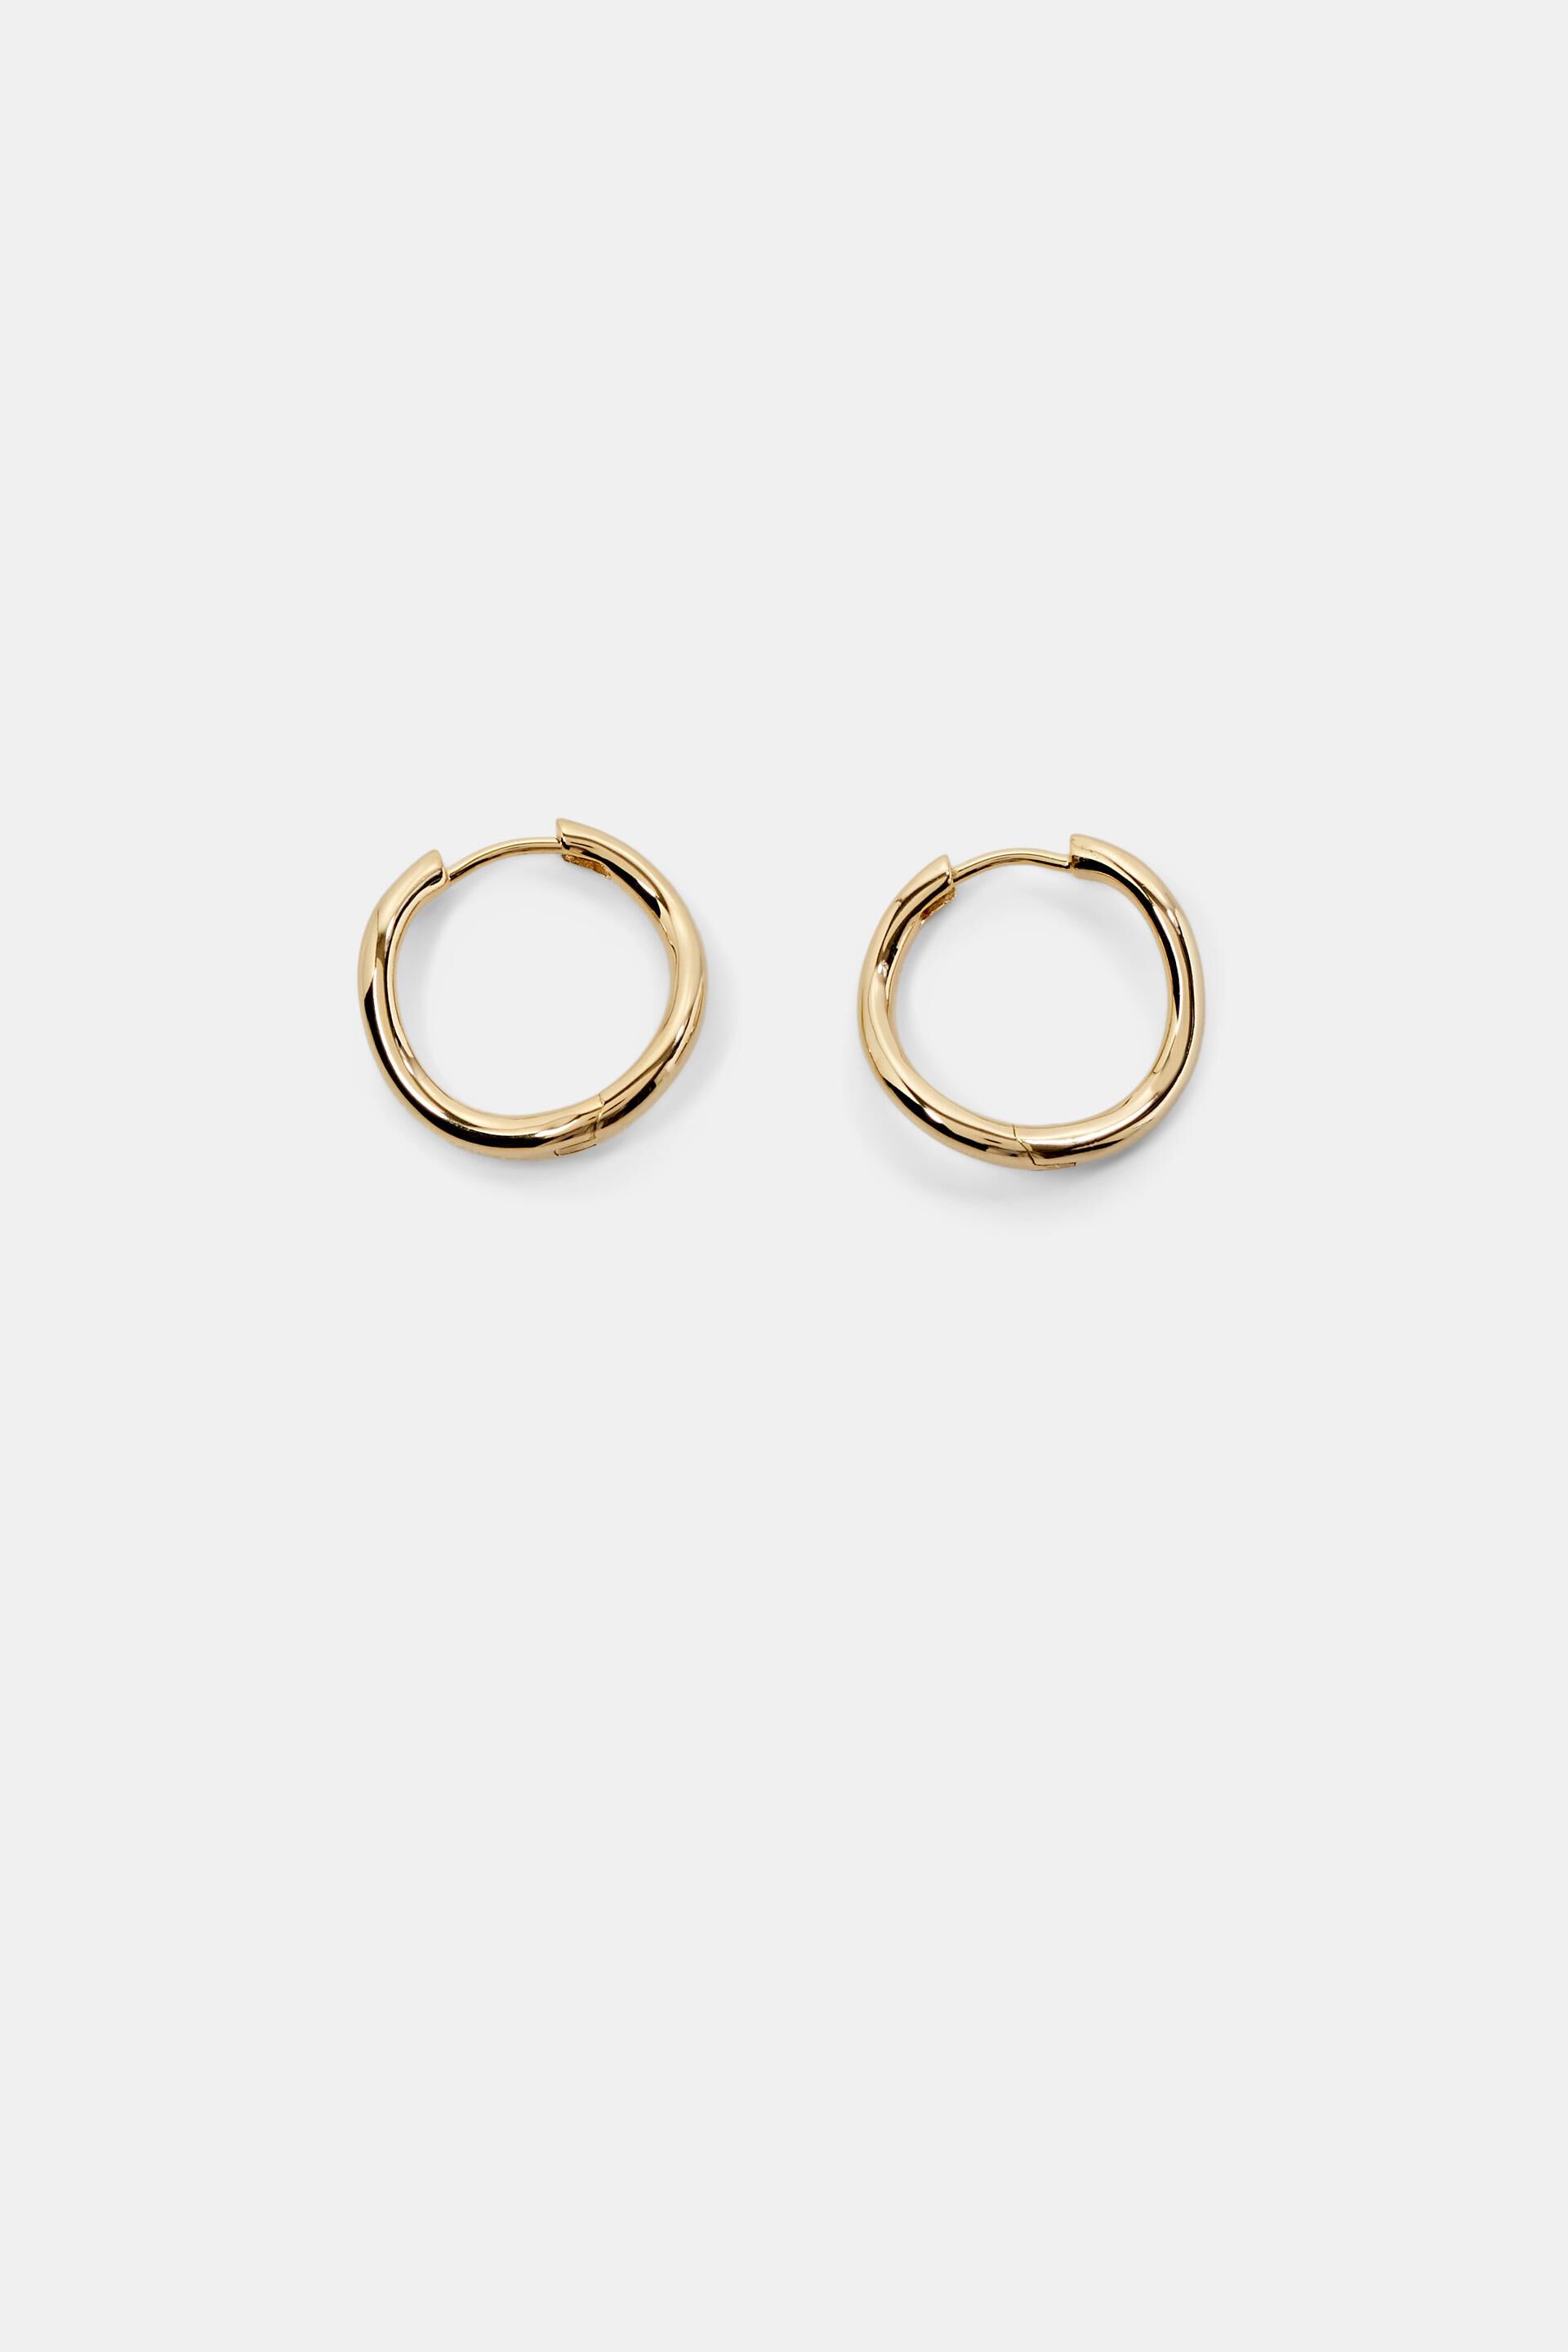 Esprit Online Store 18K Gold-Plated Wave Earrings Hoop